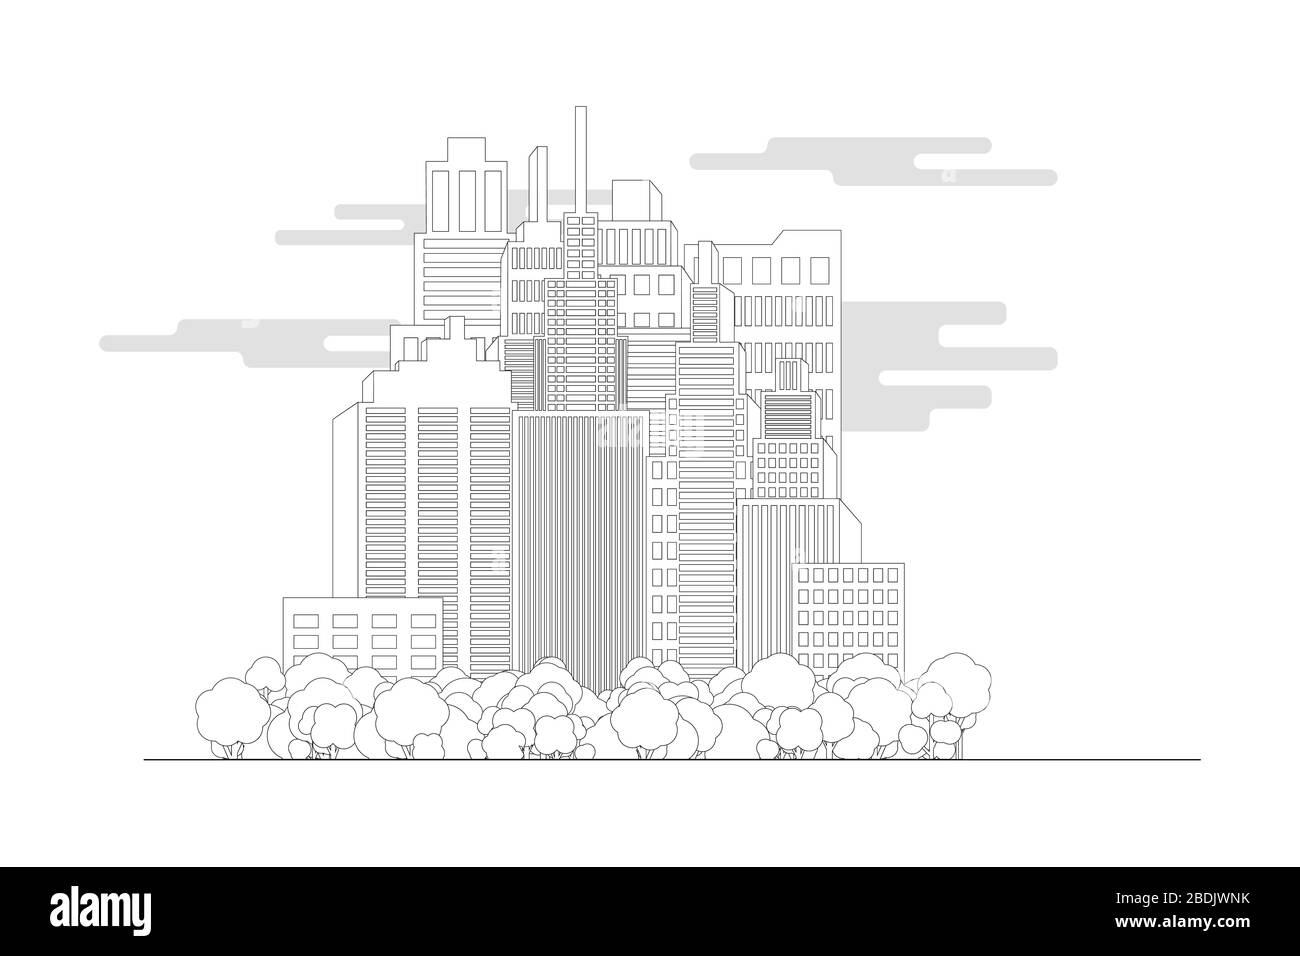 Stadtbild einer Straße. Monochrom im Linienstil. Hintergrund einer modernen Stadt mit Wolkenkratzern. Flaches Design. Architektonisches Gebäude. Gliederung. Stock Vektor